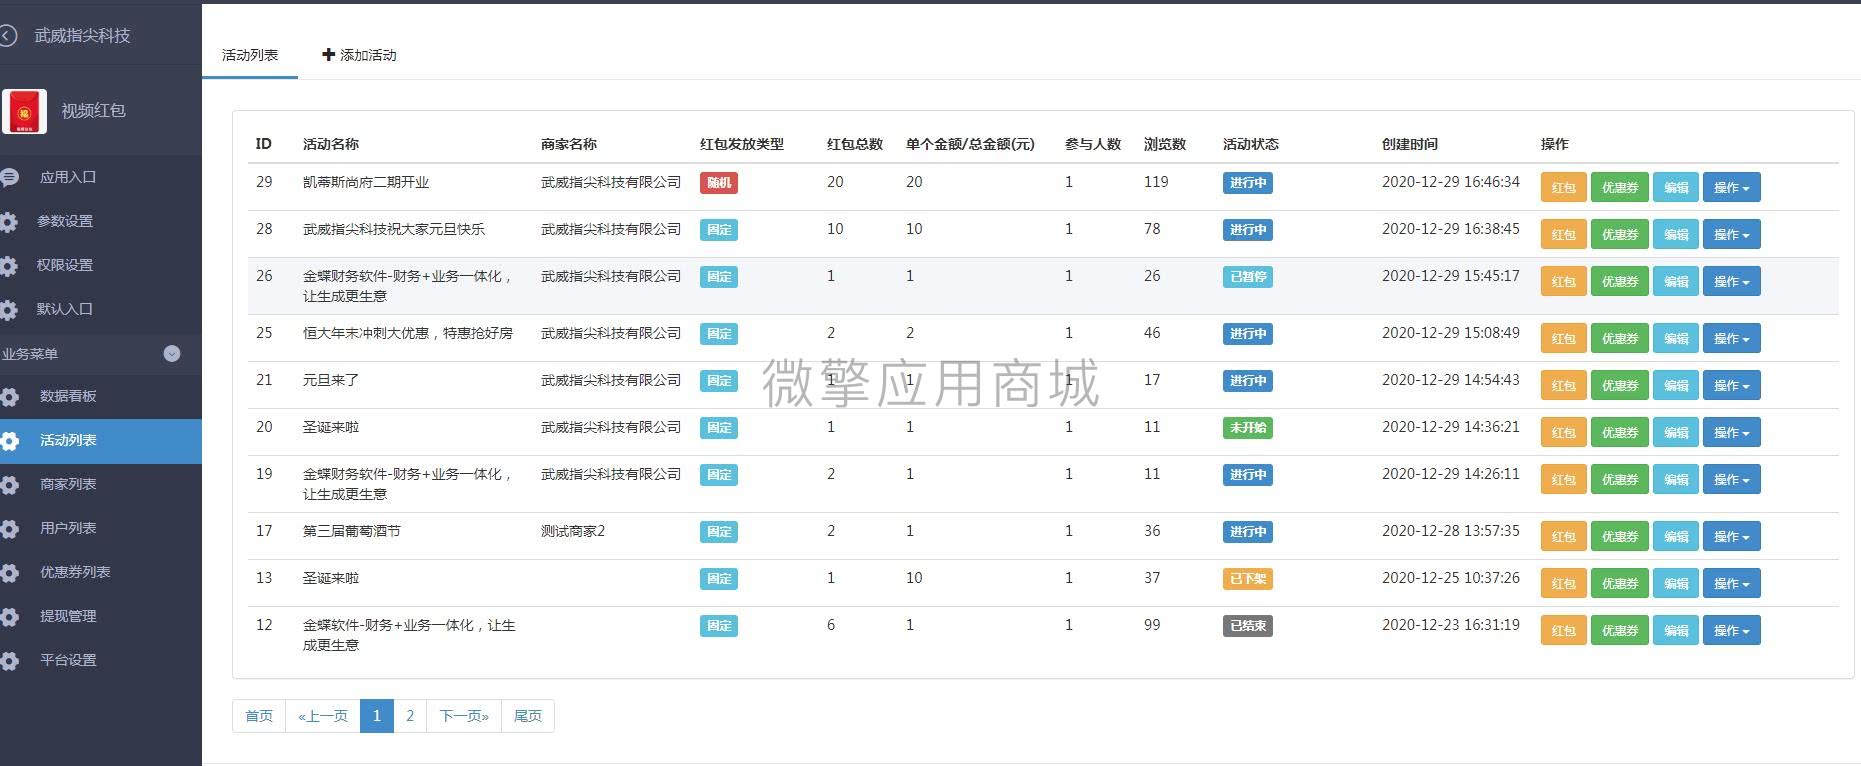 【公众号应用】福牛视频红包V1.0.4公众号应用，新增红包排行榜 公众号应用 第5张